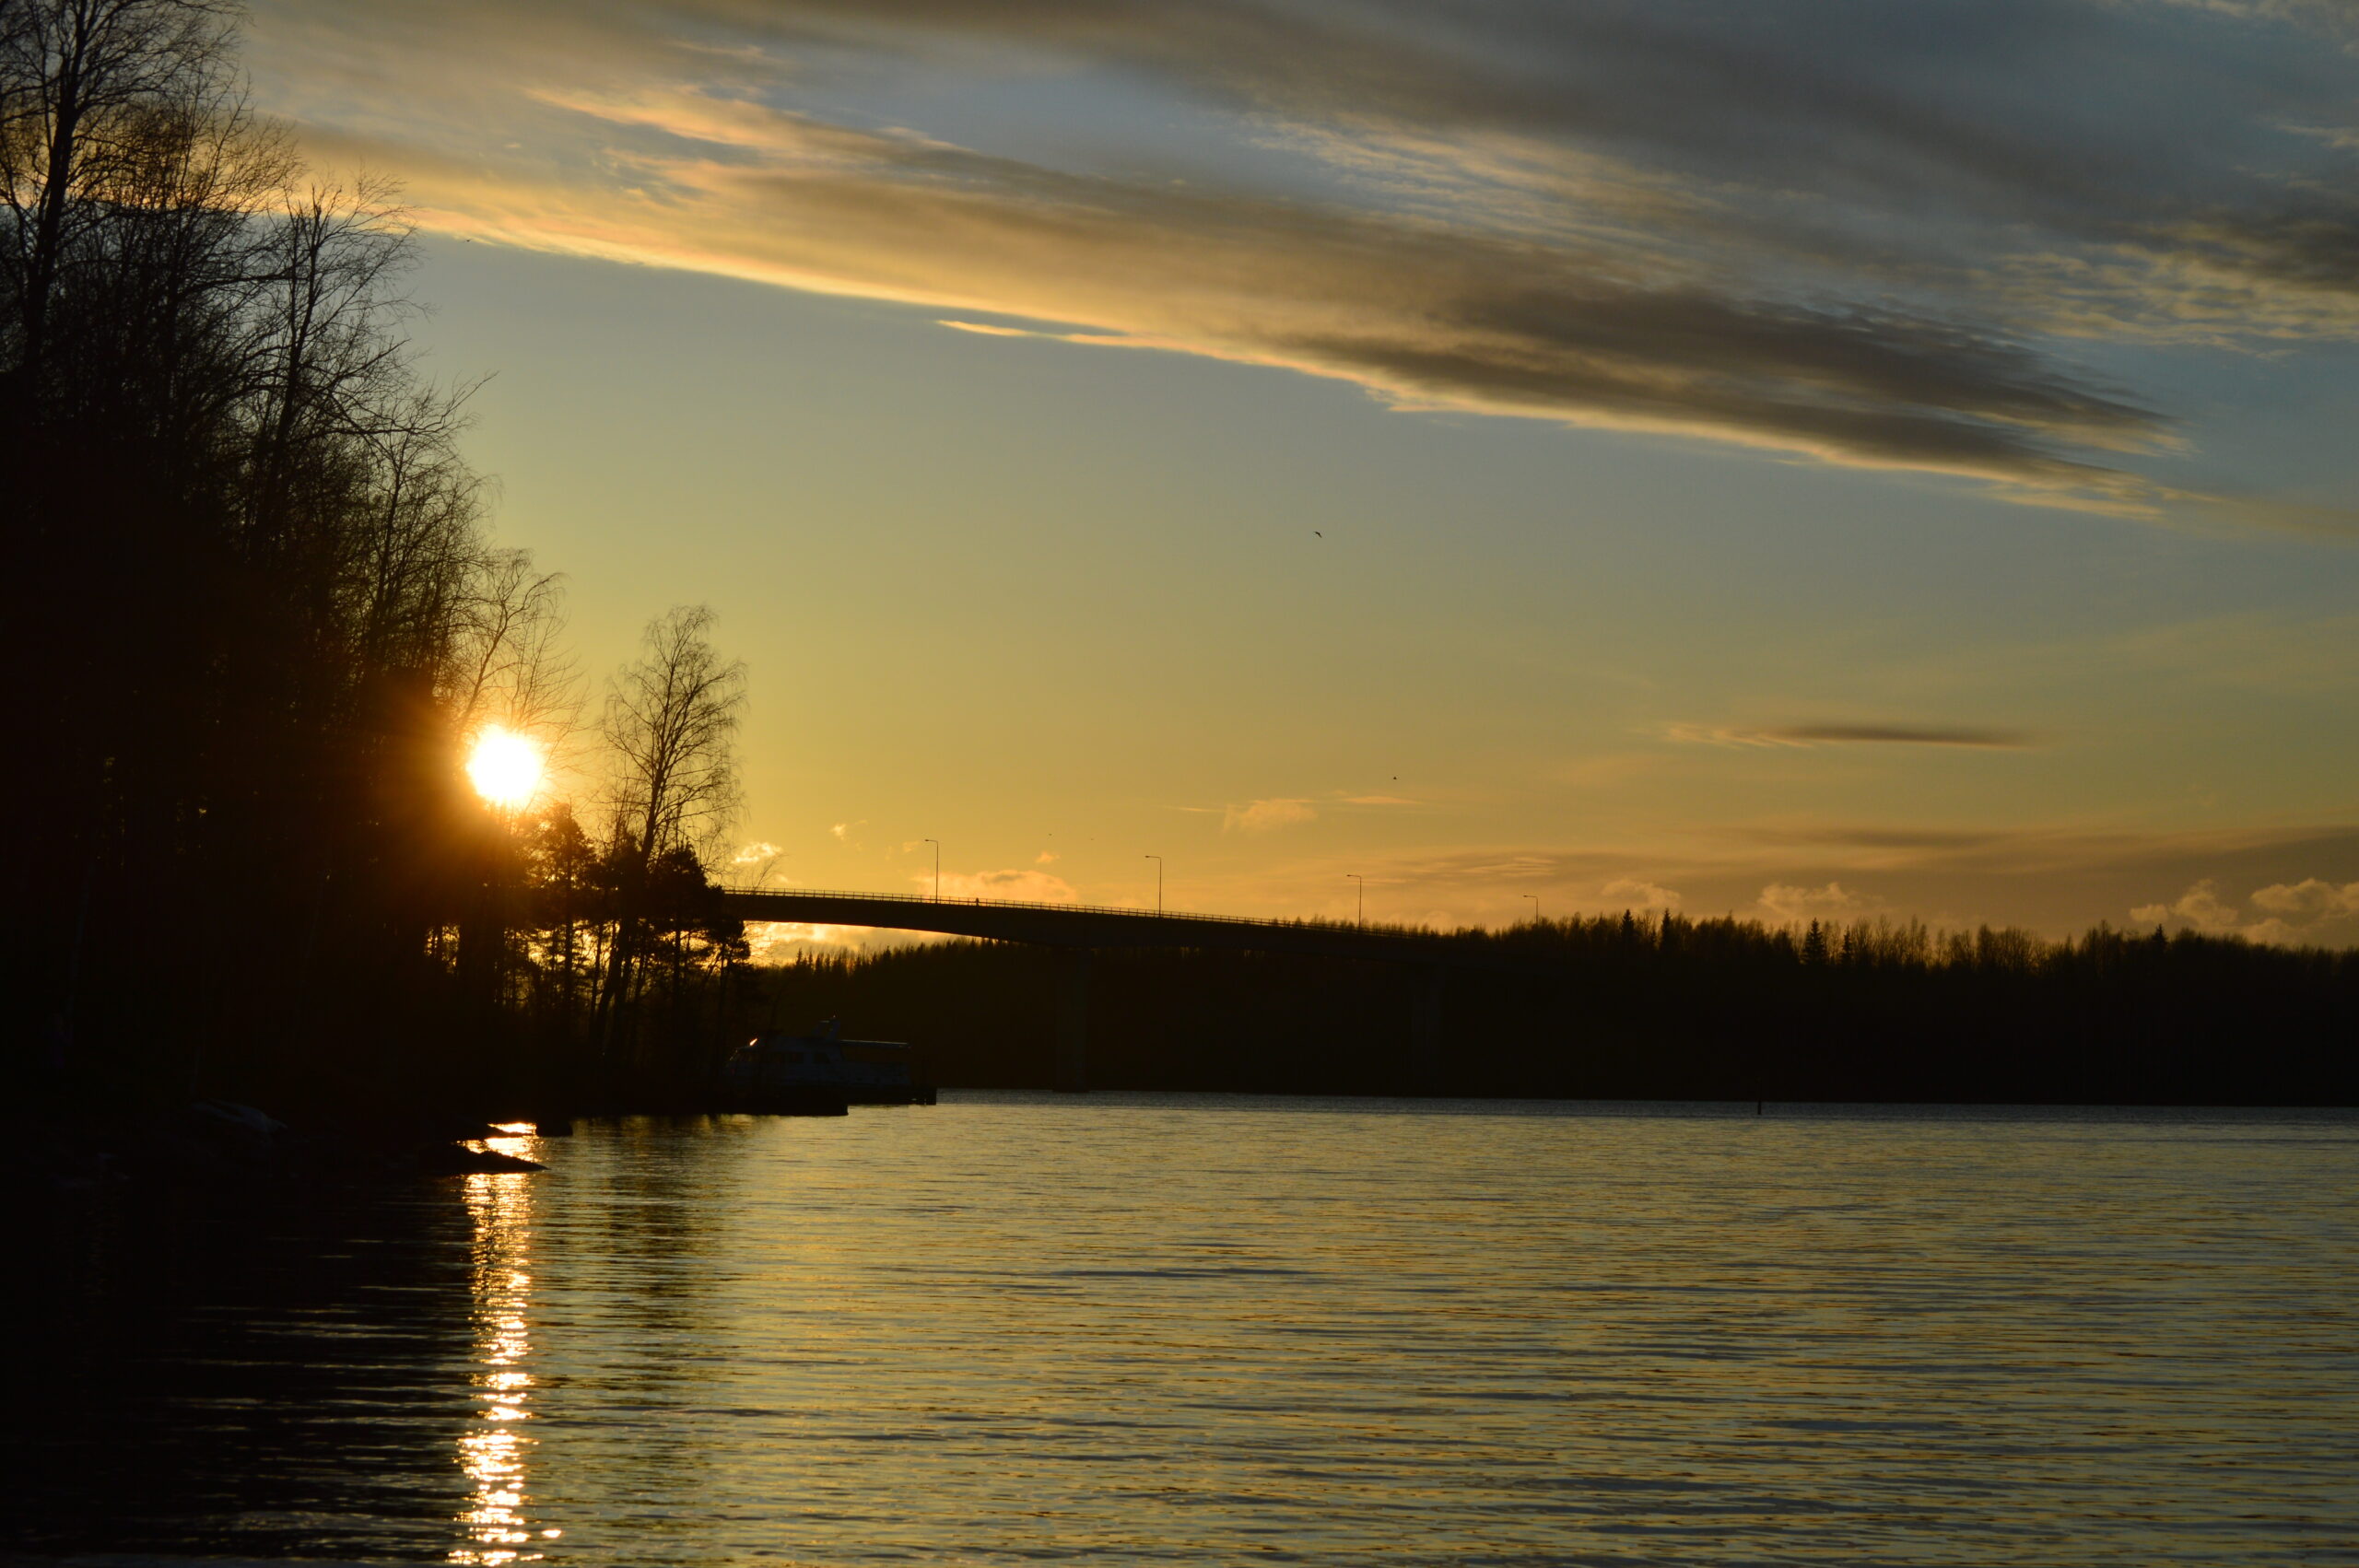 Aurinkolasku kuva Saimaalta. Kuvasssa järven selkää, taivaalla punertavia pilviä. Taustalla sillan musta silhuetti.